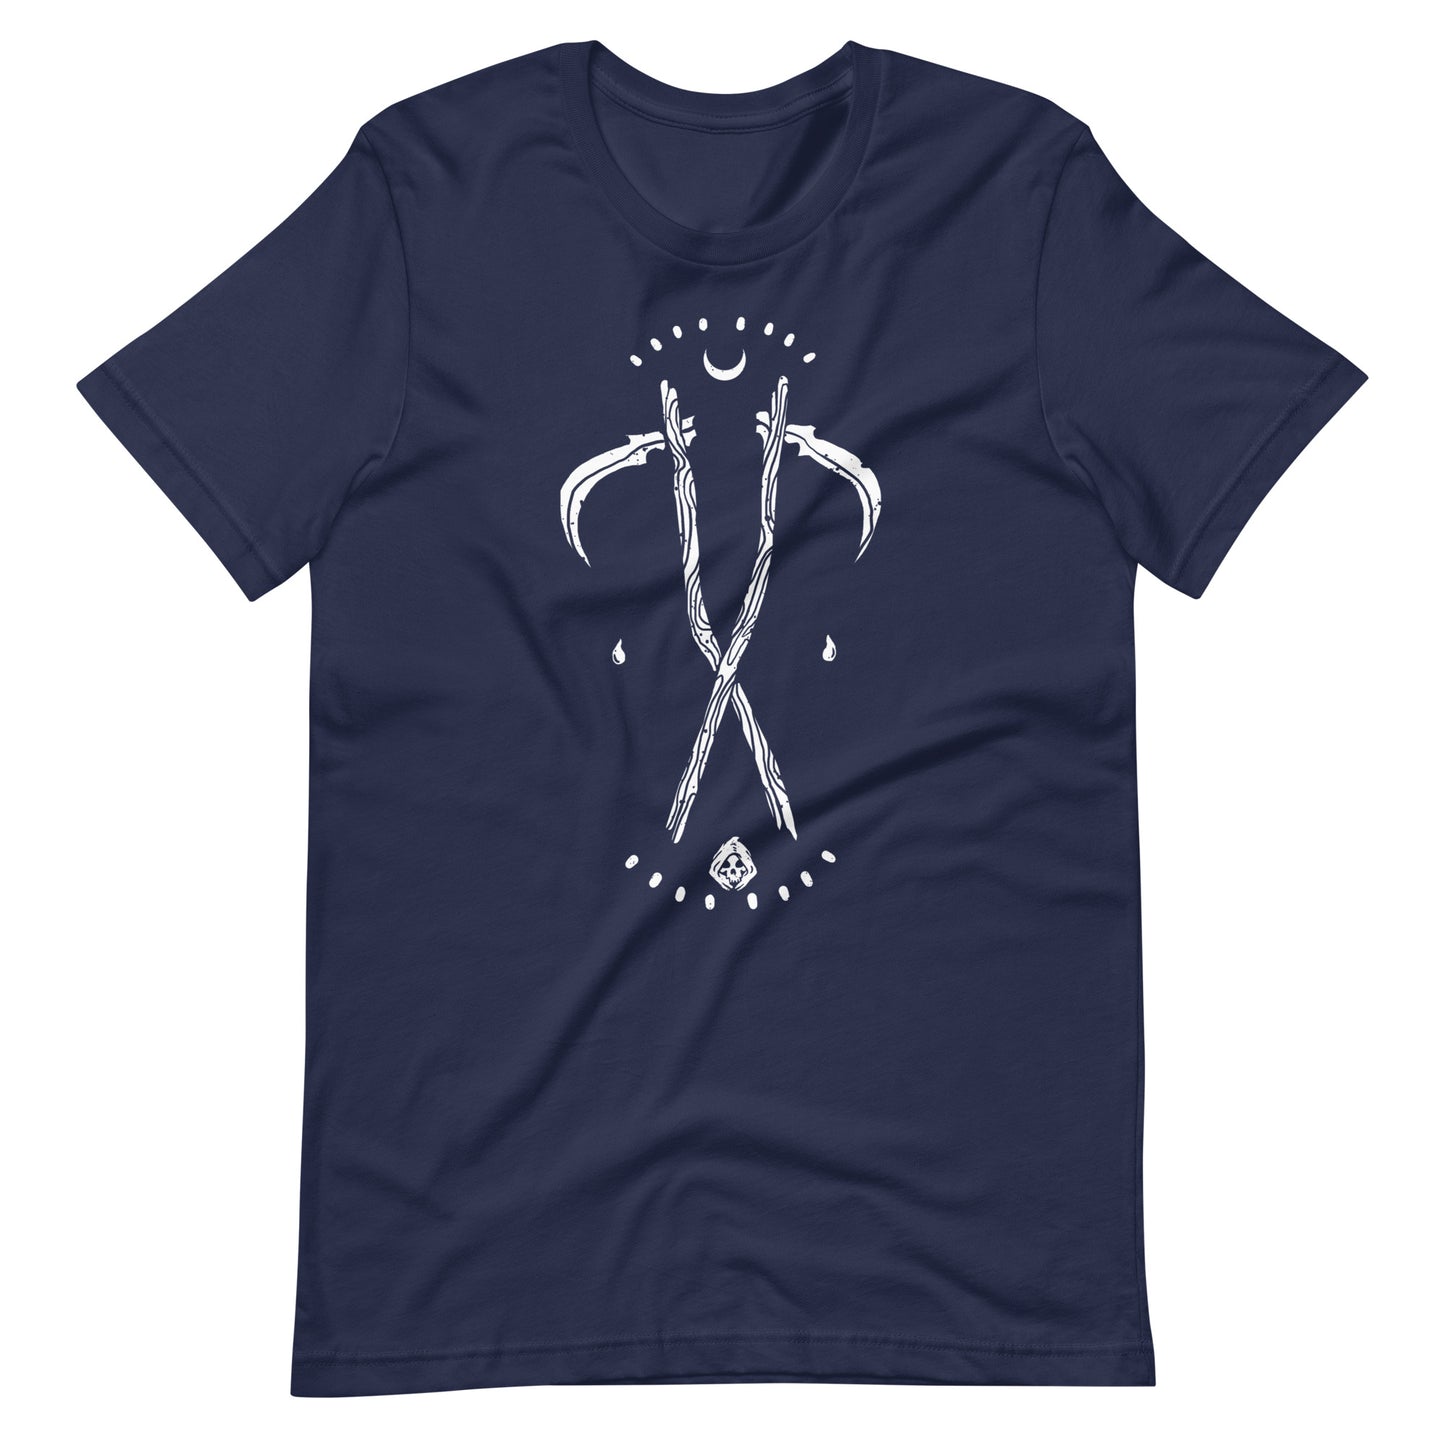 Grim - Men's t-shirt - Navy Front